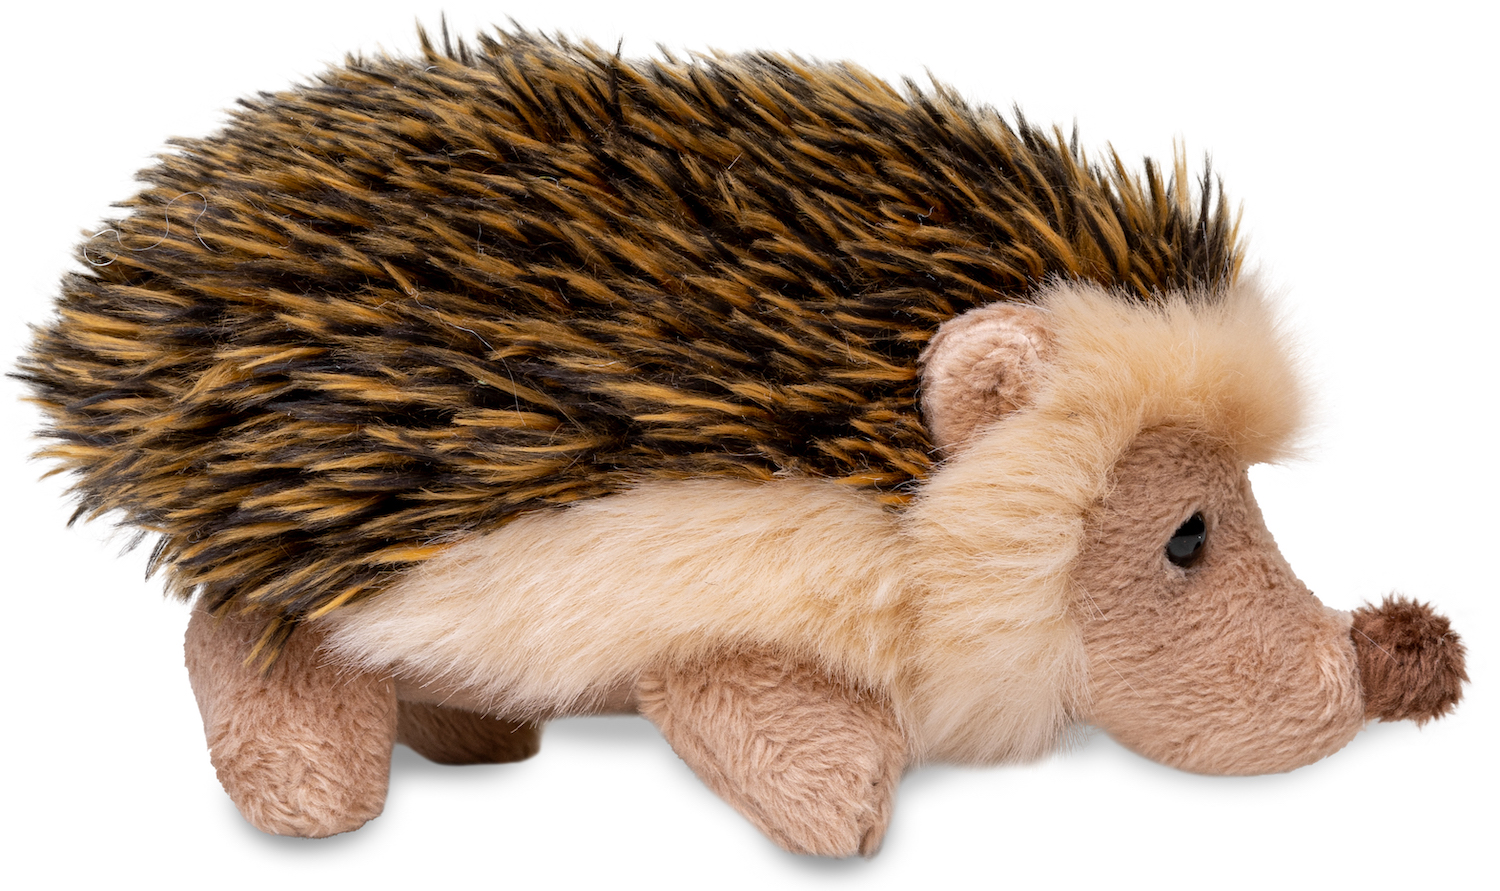 Hedgehog - 13 cm (length)